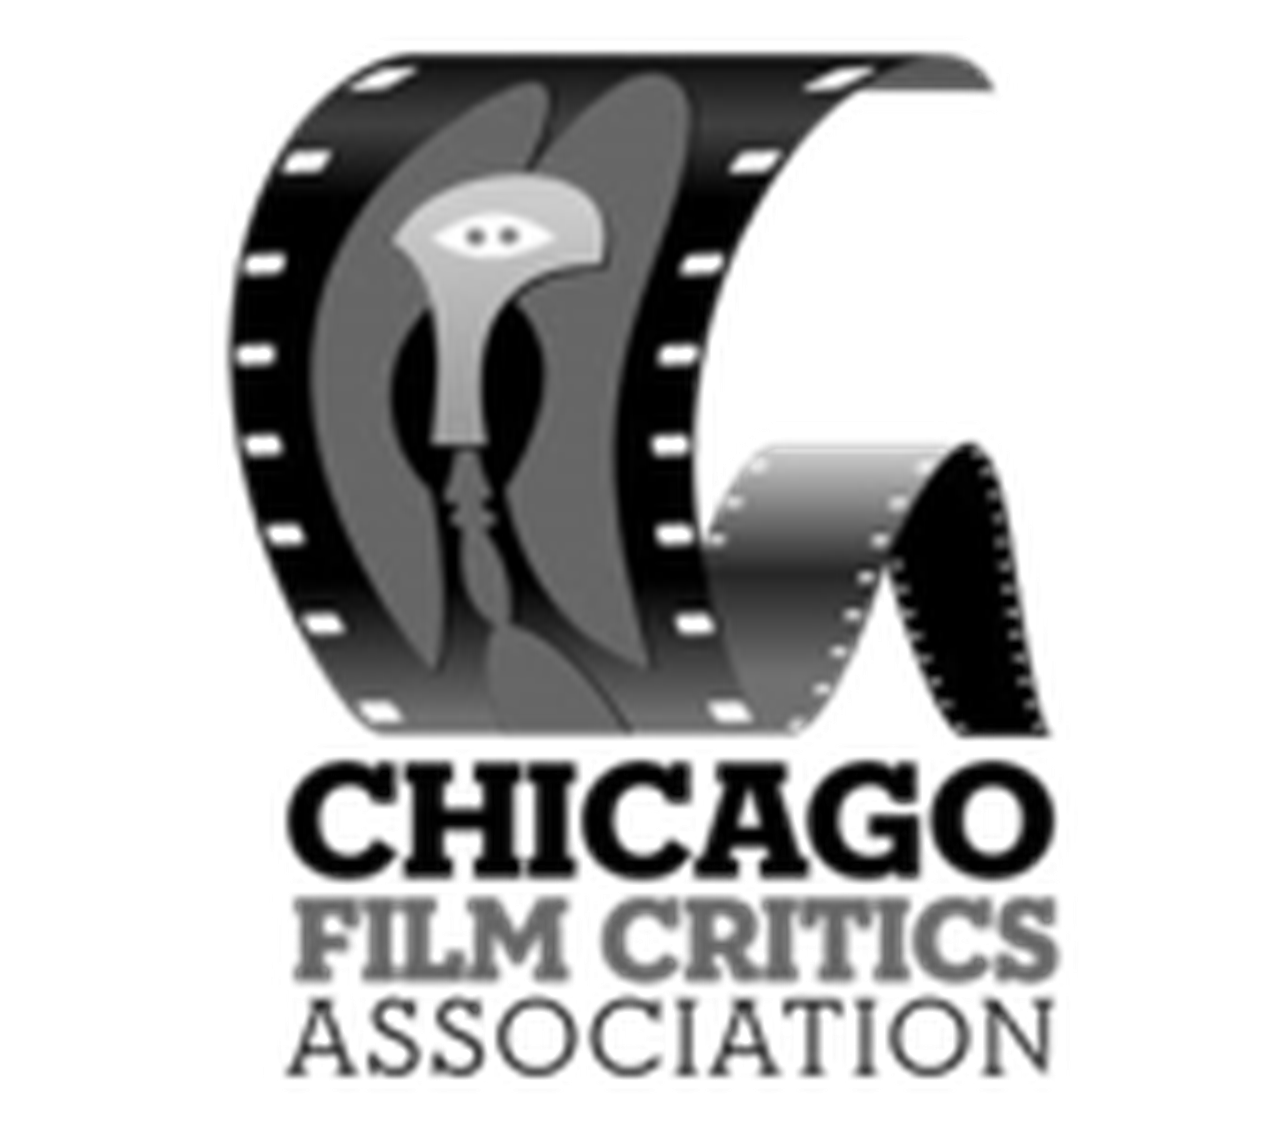 Chicago Film Critics Association Awards